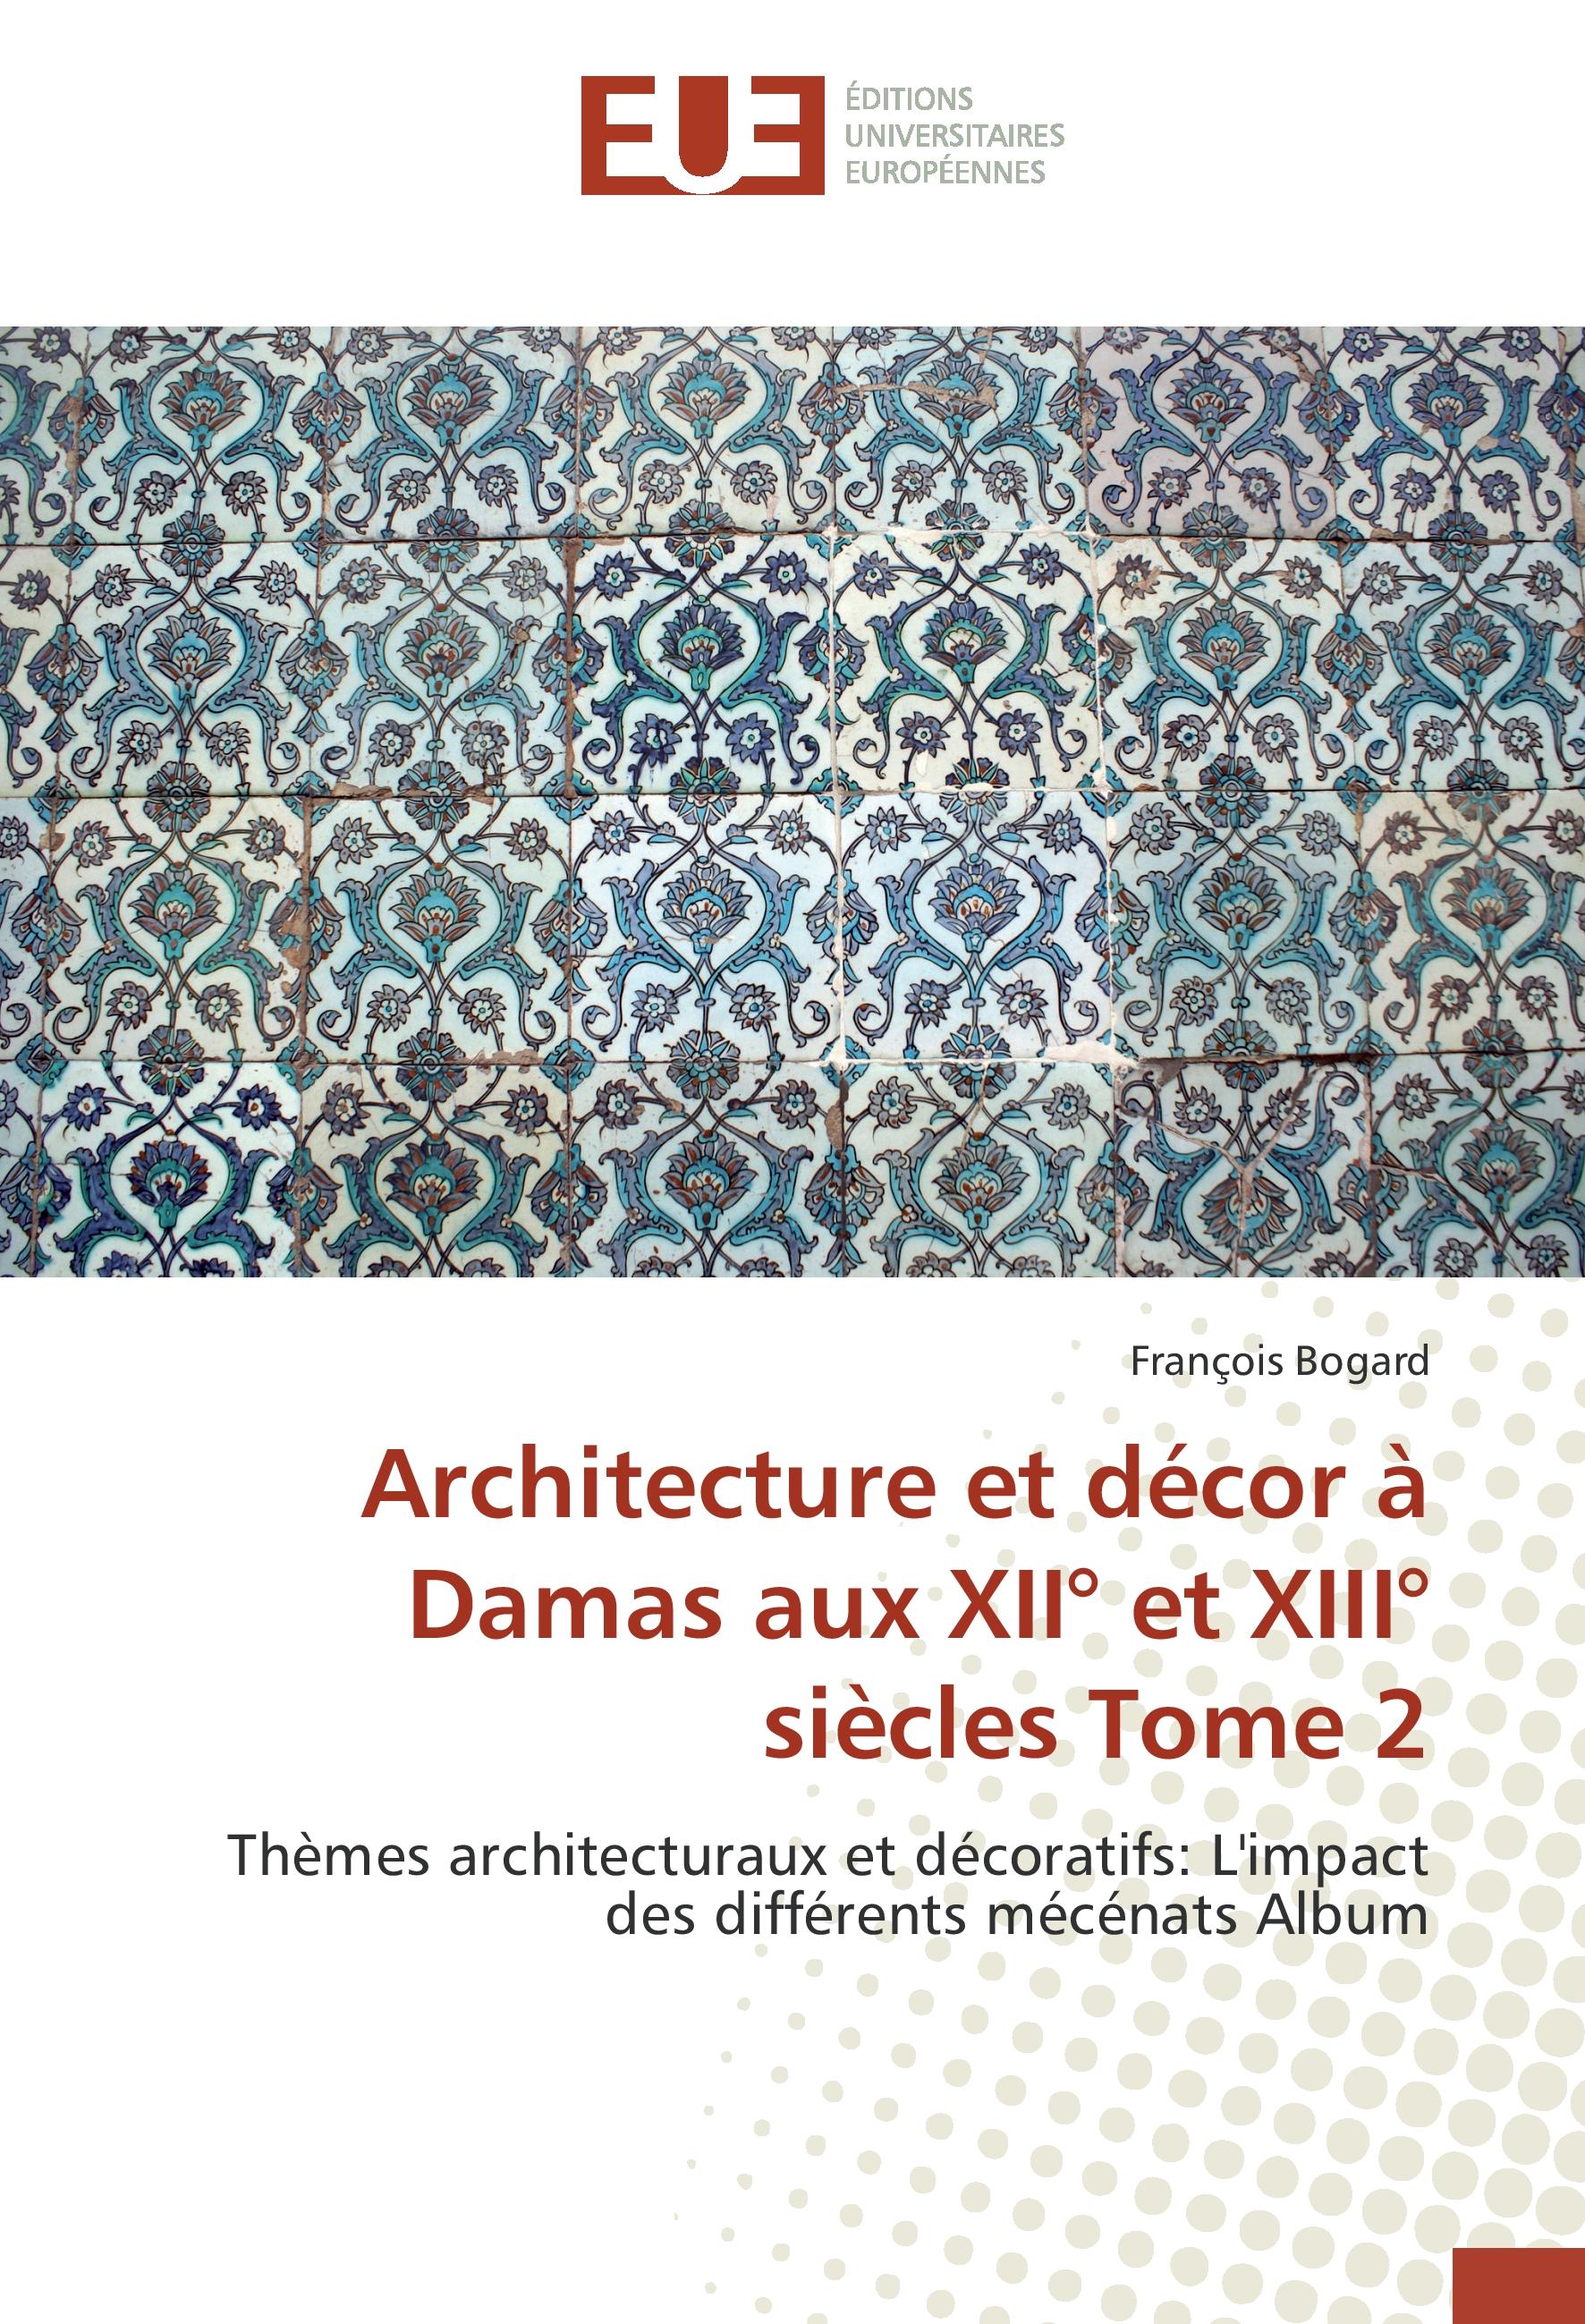 Architecture et décor à Damas aux XII° et XIII° siècles Tome 2 - François Bogard